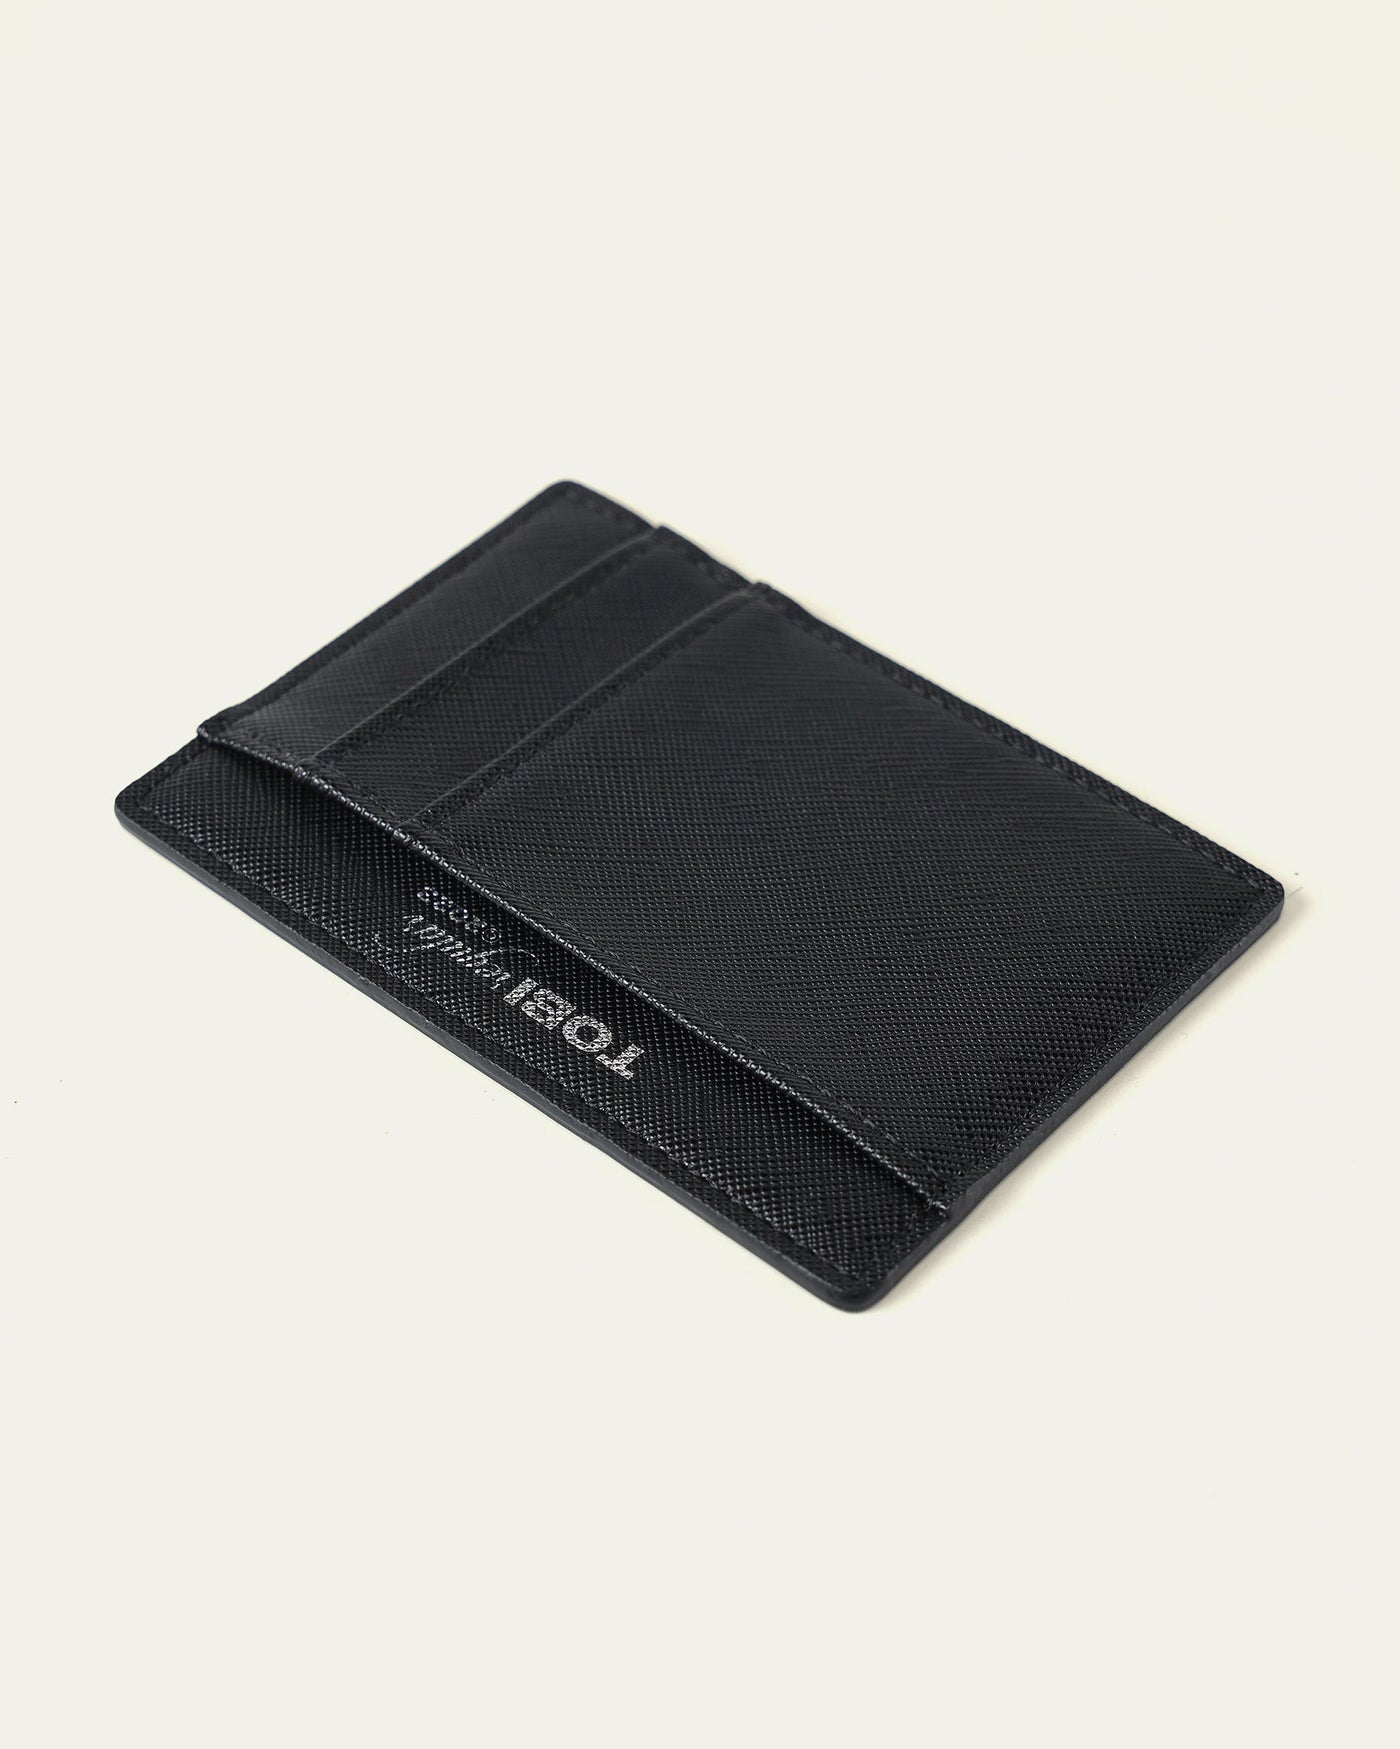 TOBI Leather Cardholder - Black - TOBI